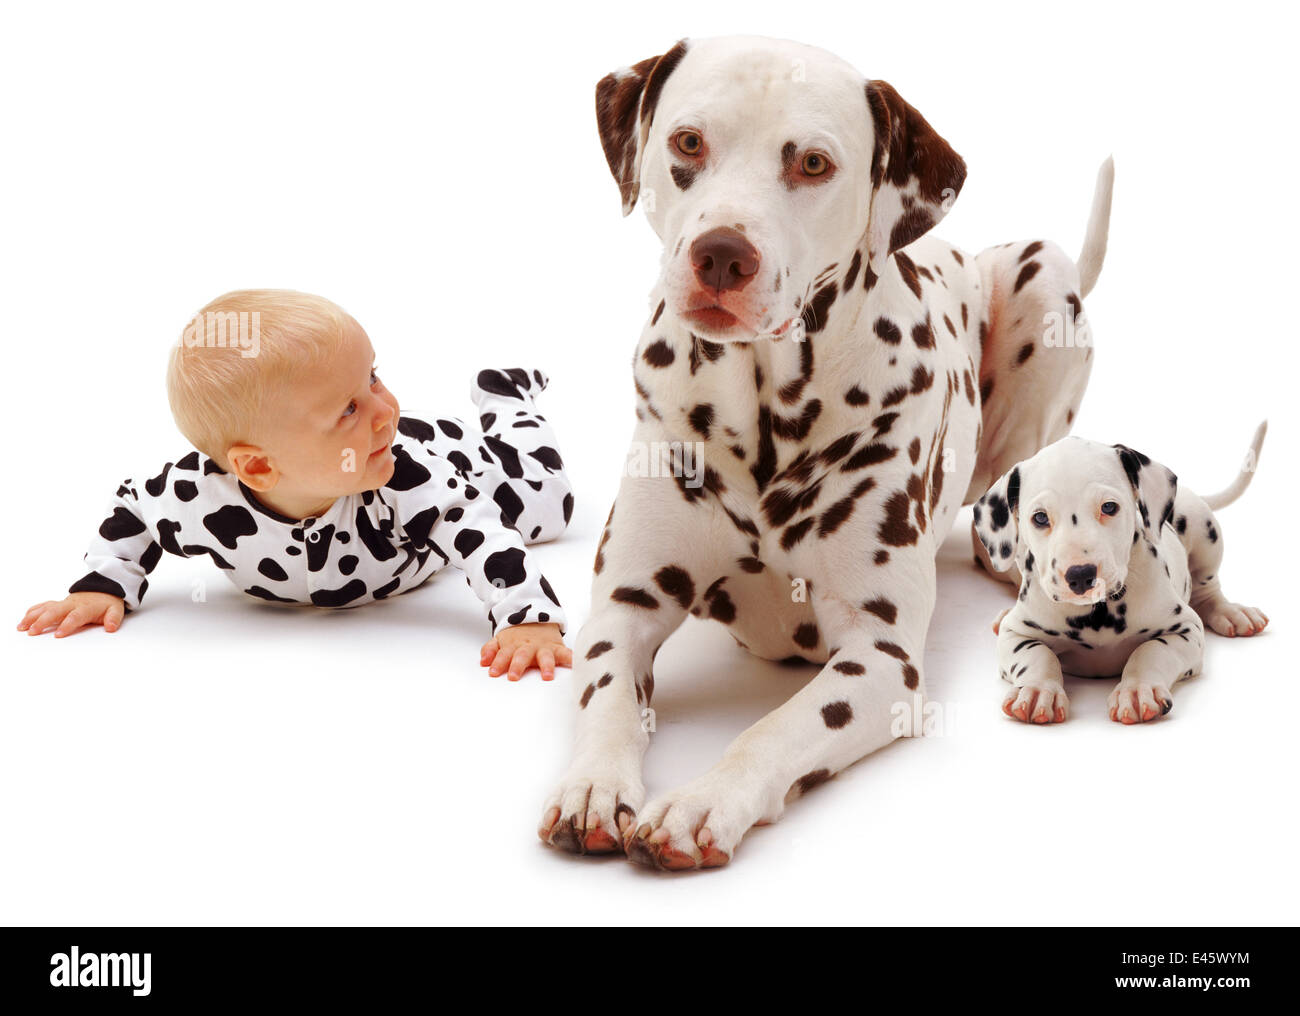 Bambina di età compresa tra i 6 mesi, indossando un abito a macchie e disteso con un maschio dalmata e il suo giovane cucciolo. Modello rilasciato Foto Stock